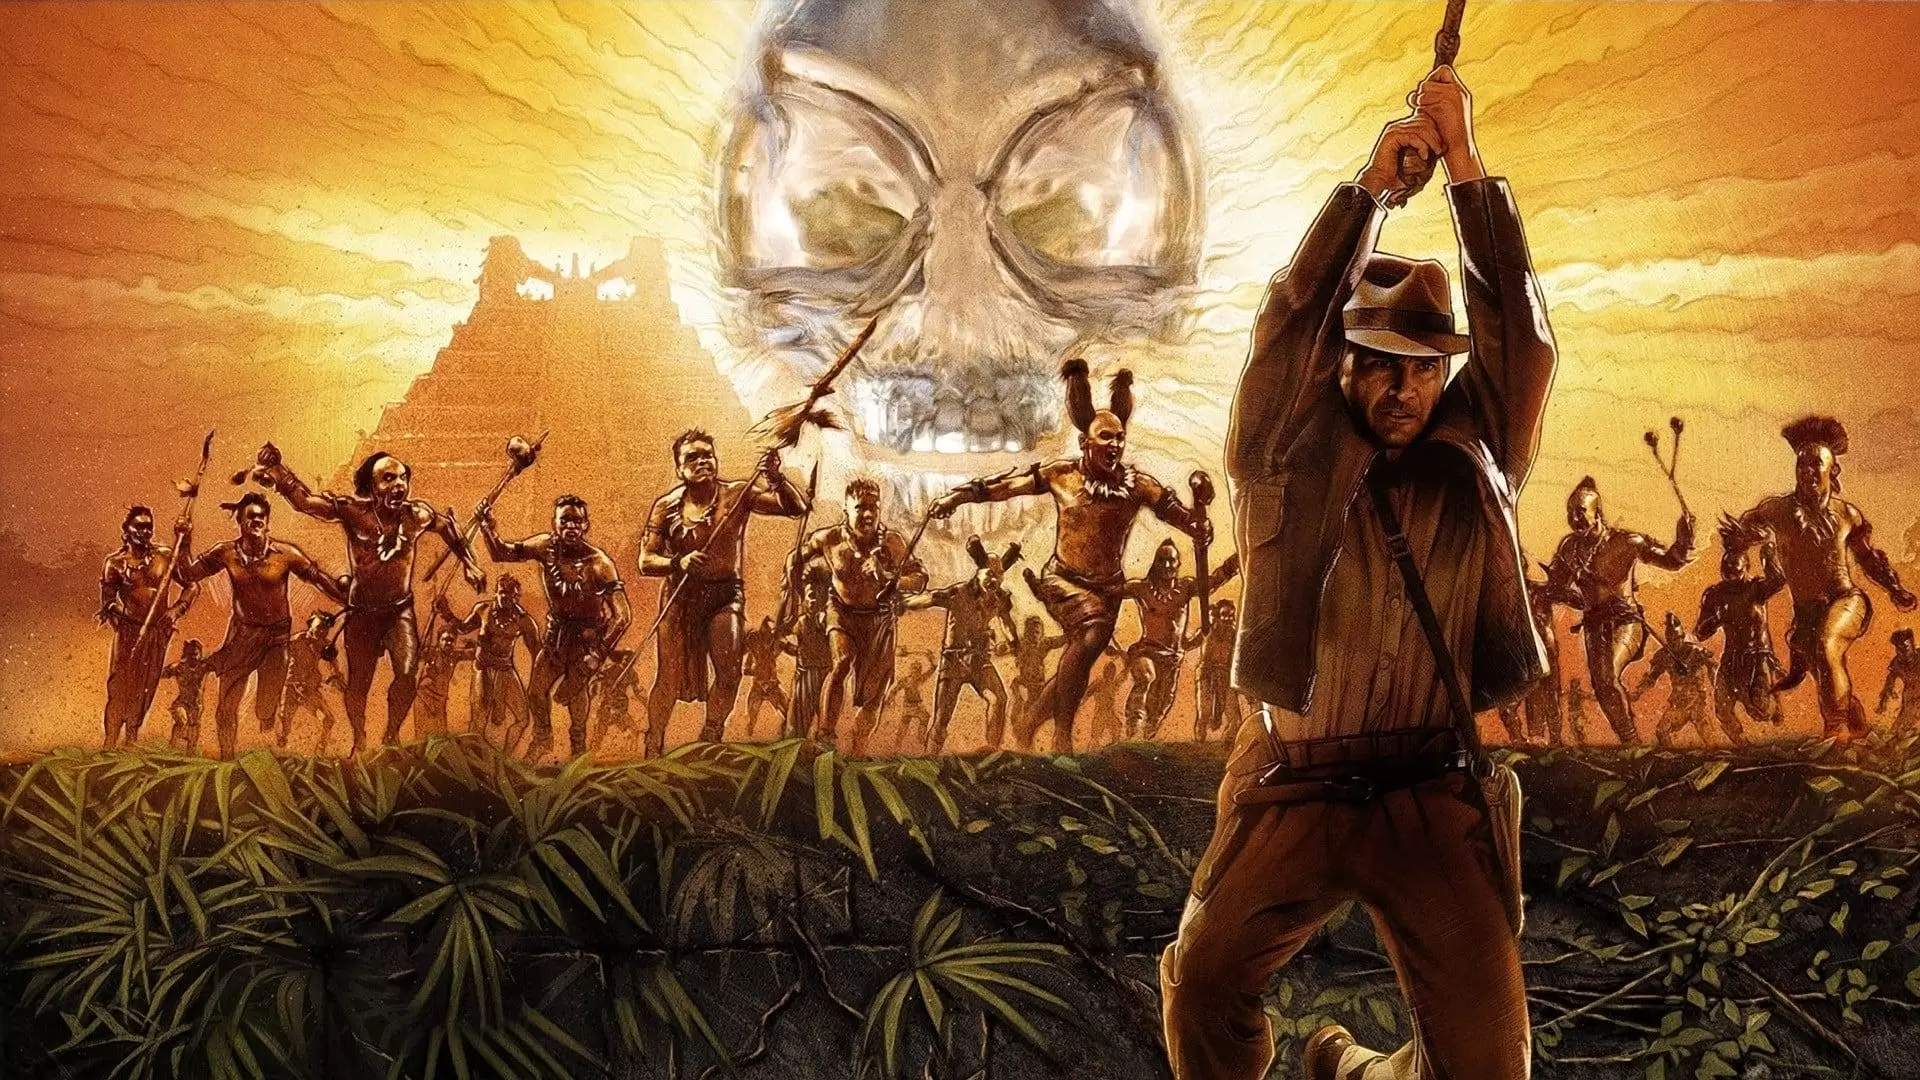 دانلود فیلم Indiana Jones and the Kingdom of the Crystal Skull 2008 (ایندیانا جونز و قلمرو جمجمه بلورین) با زیرنویس فارسی و تماشای آنلاین